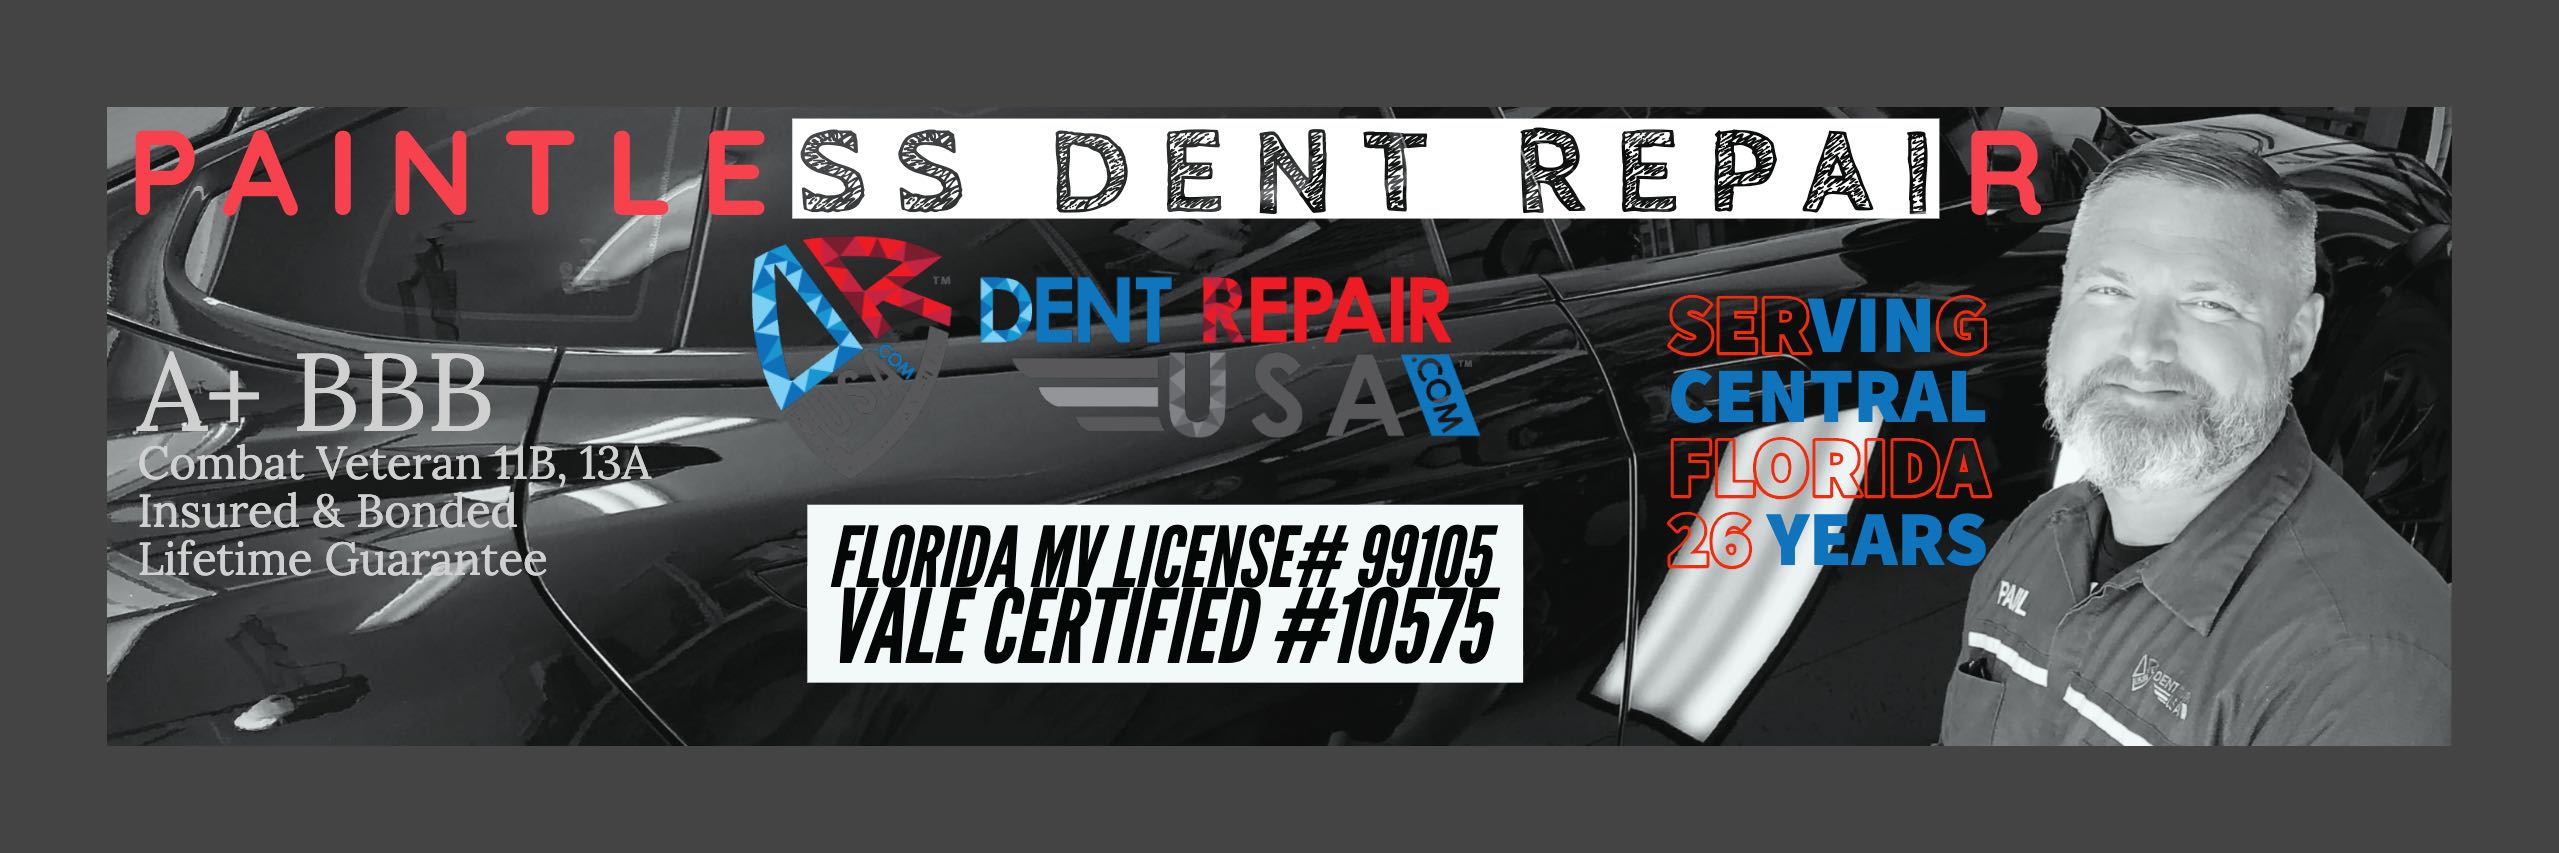 Blog Dent Repair USA Paintless Dent Repair Lakeland Florida